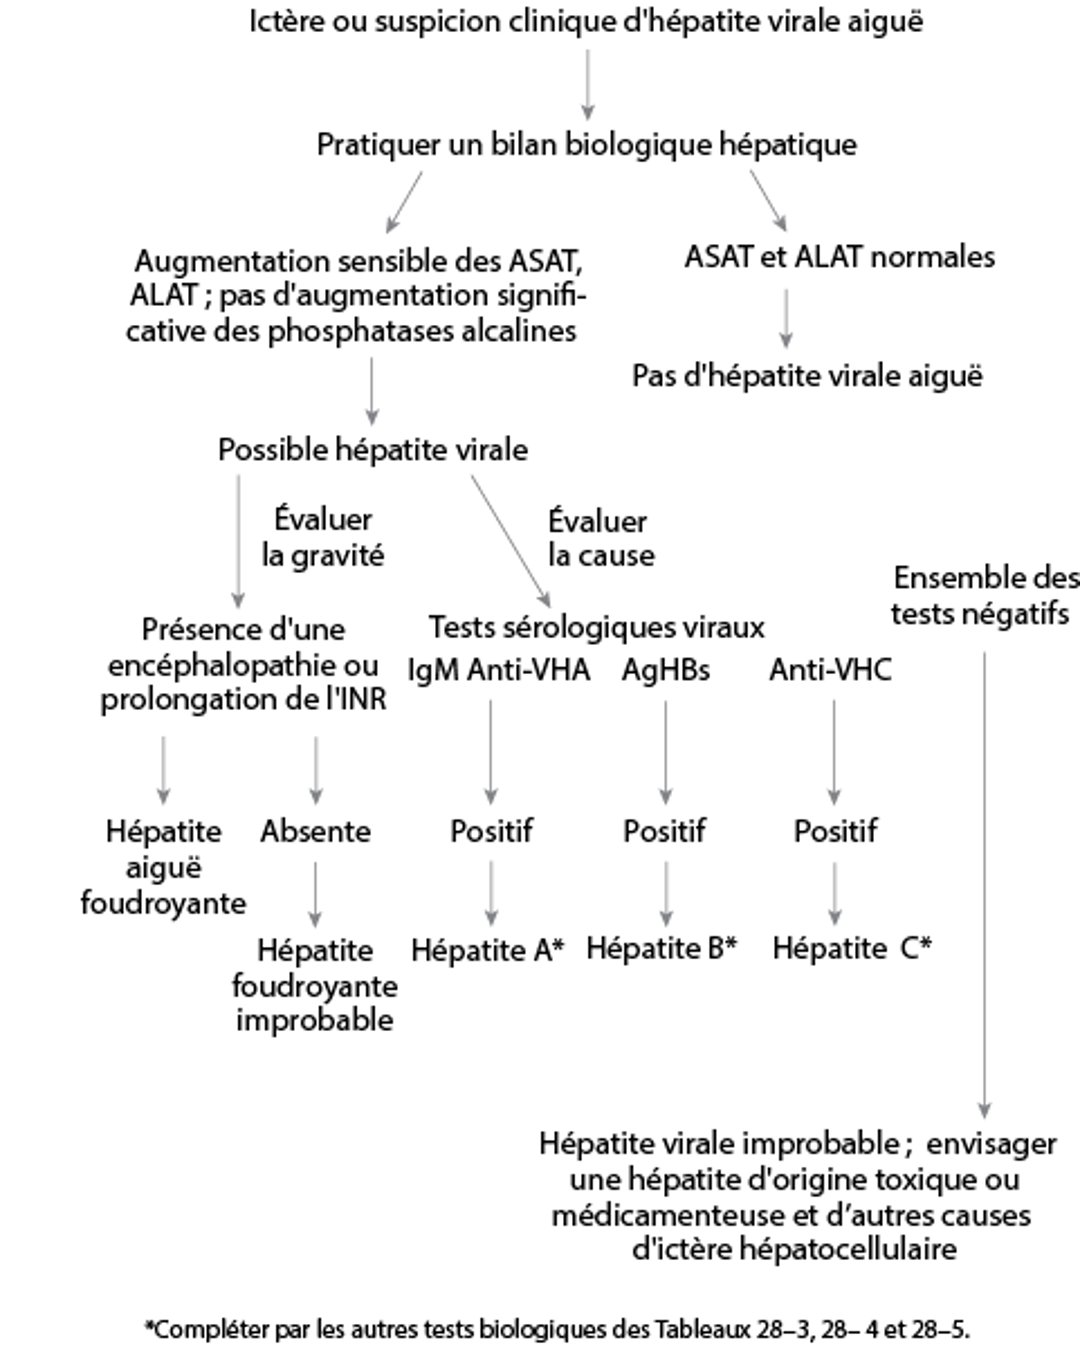 Démarche diagnostique simplifiée en cas de suspicion d'hépatite virale aiguë